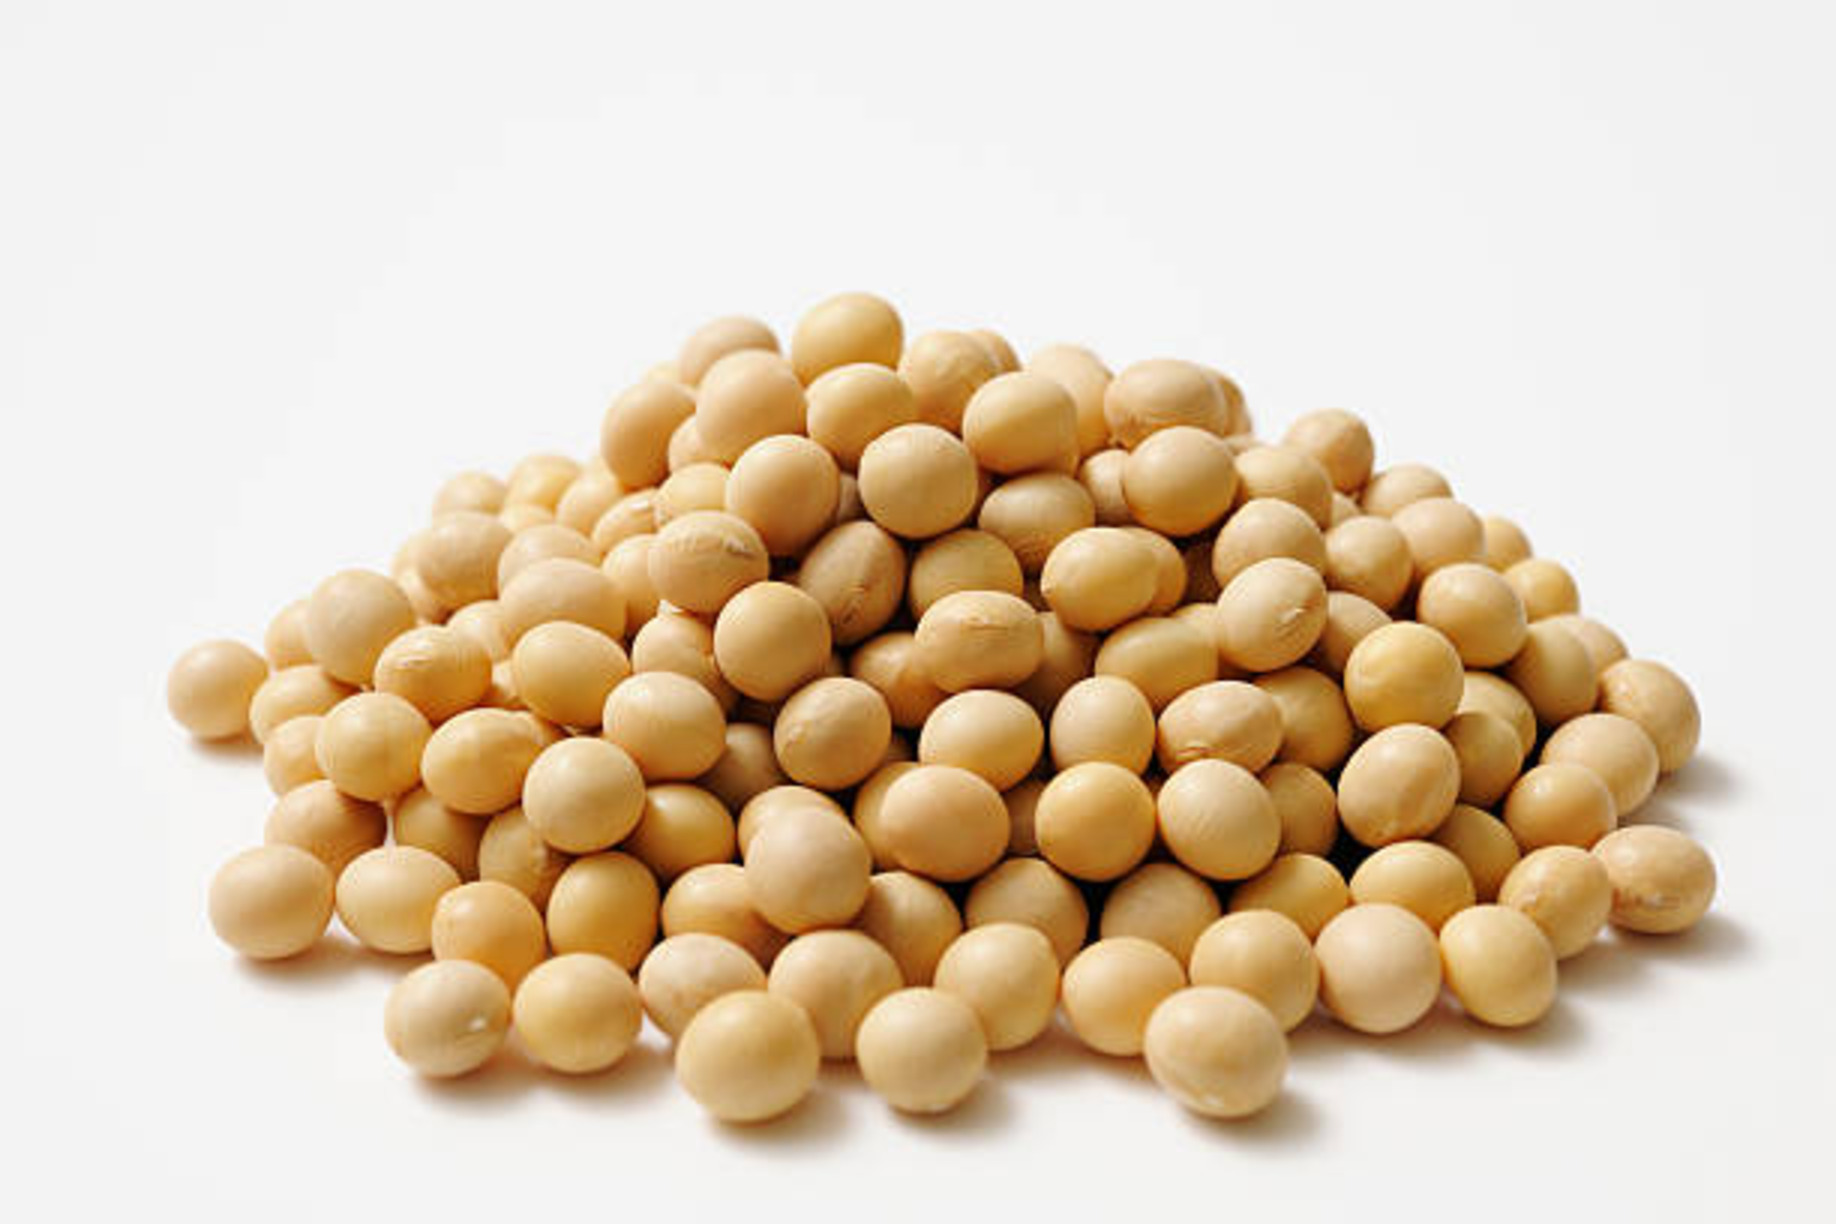 Pile of soya beans